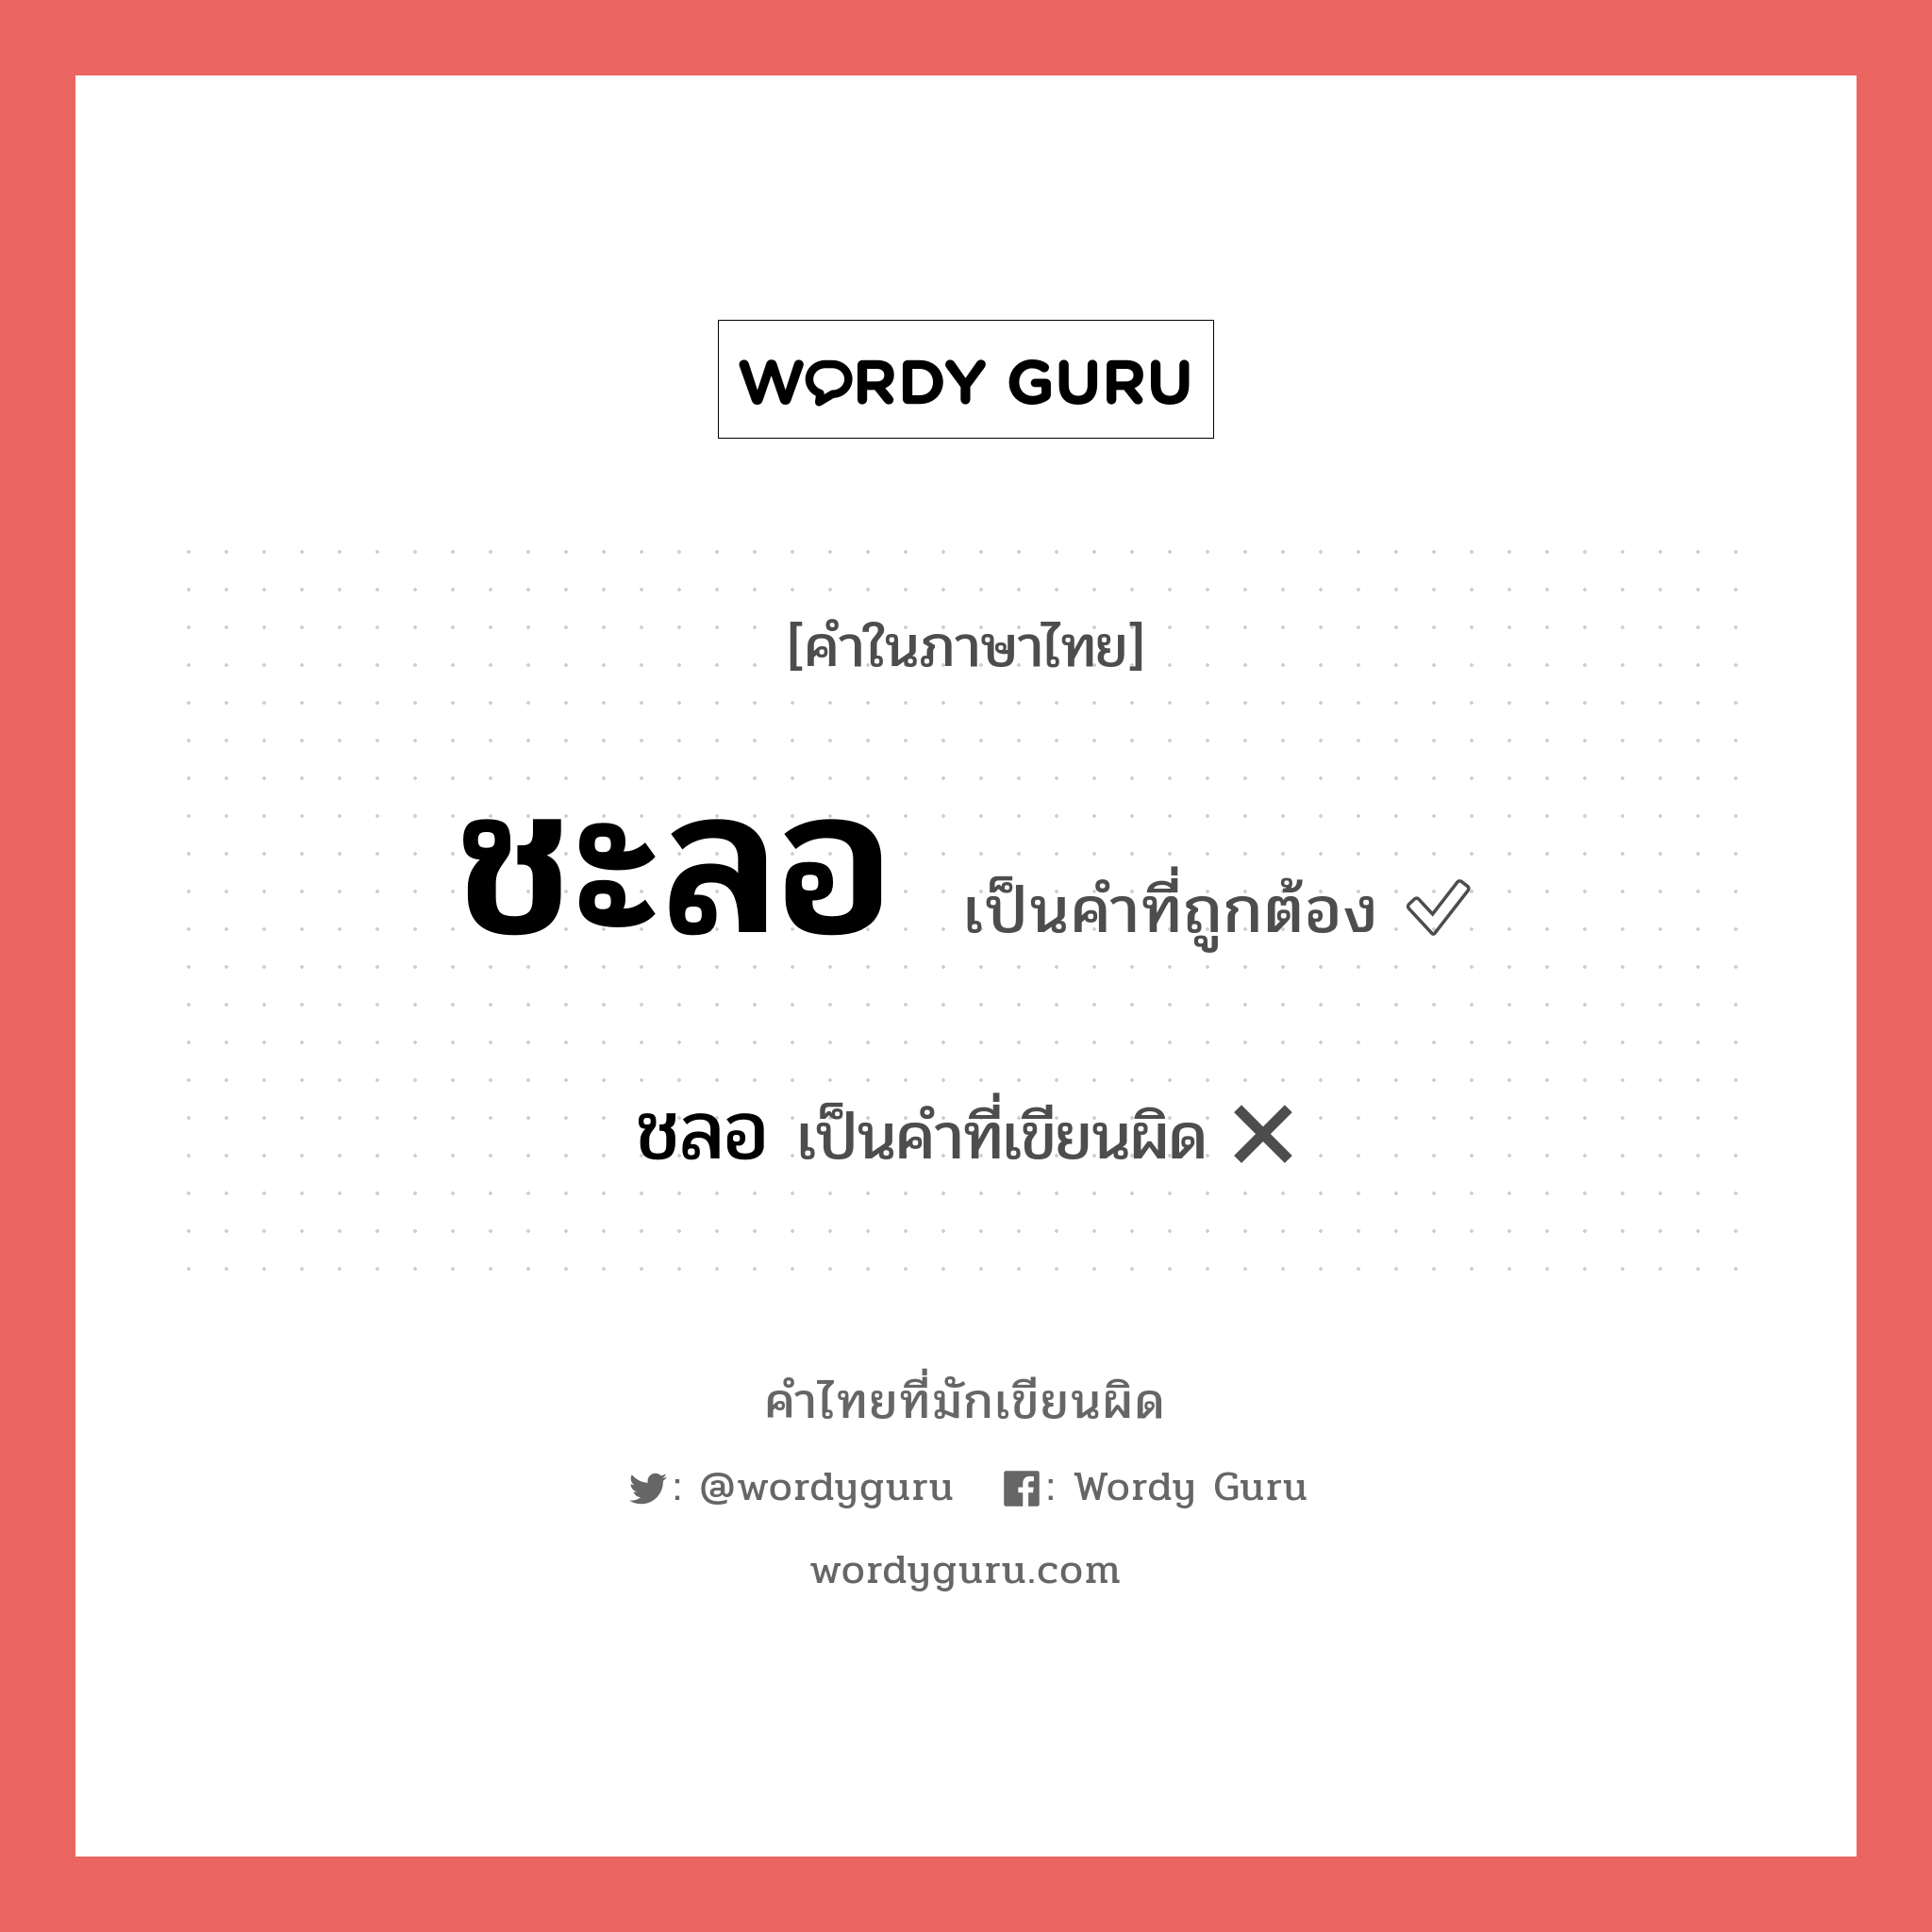 ชะลอ หรือ ชลอ เขียนยังไง? คำไหนเขียนถูก?, คำในภาษาไทยที่มักเขียนผิด ชะลอ คำที่ผิด ❌ ชลอ